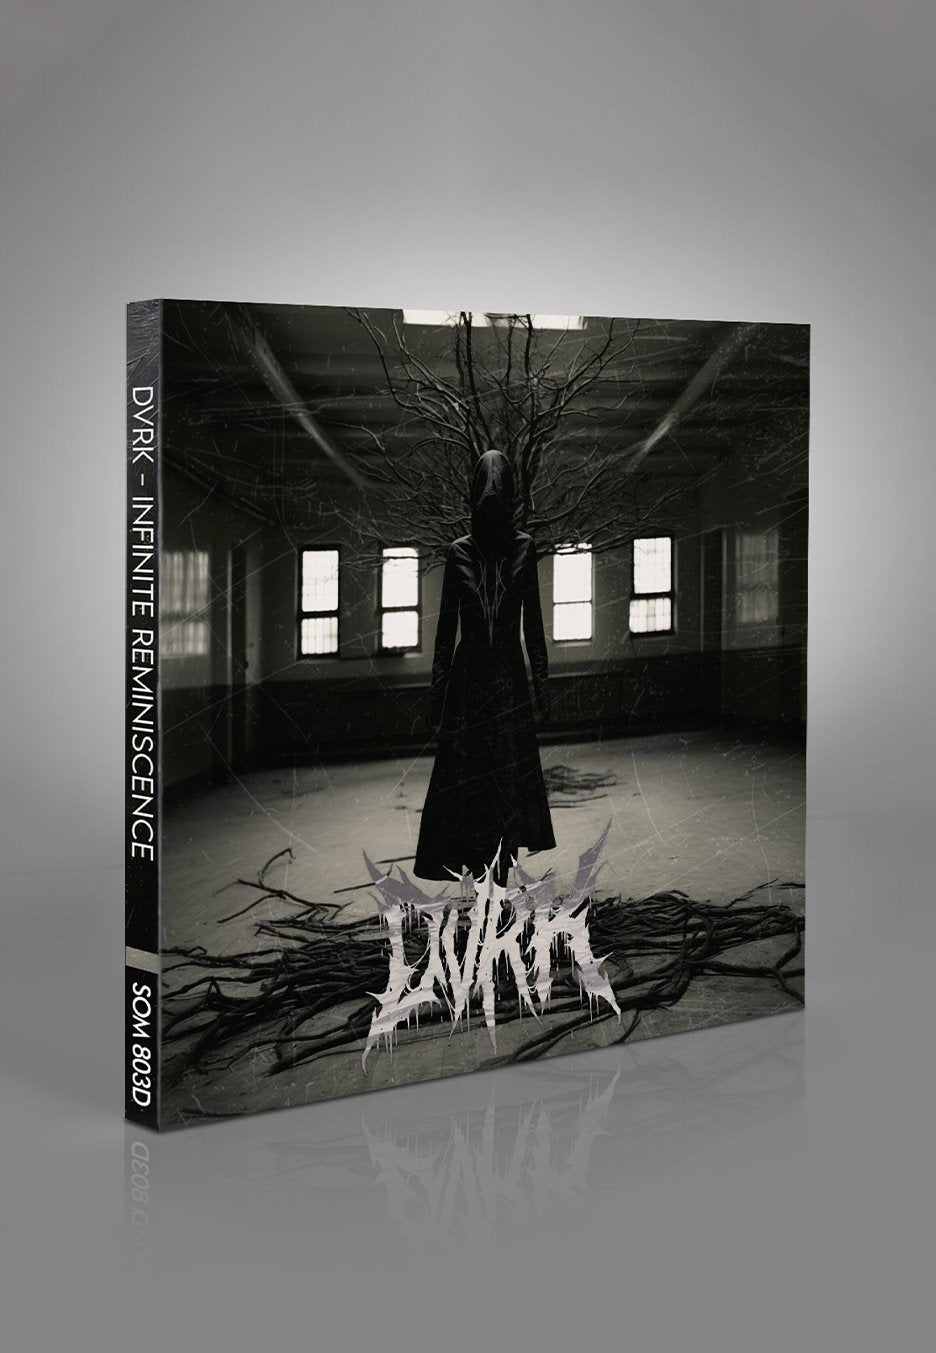 DVRK - Infinite Reminiscence - Digipak CD | Neutral-Image